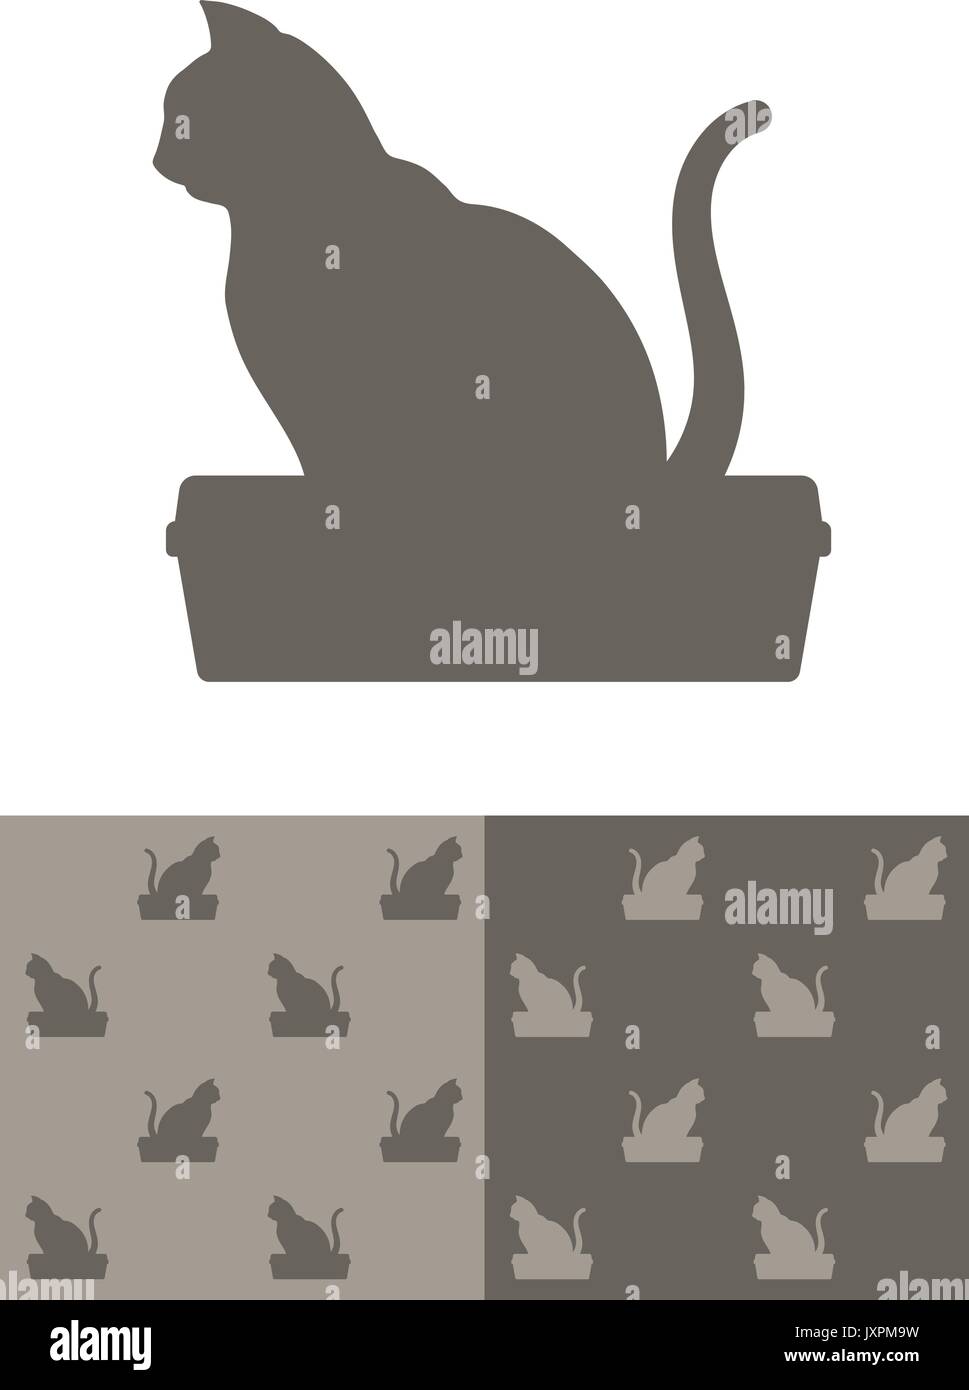 Katze, sitzend auf einem katzenklo silhouette Symbol als ein Gestaltungselement und in zwei verschiedenen Farbvariationen von einer nahtlosen Hintergrund Muster, Vektor Stock Vektor